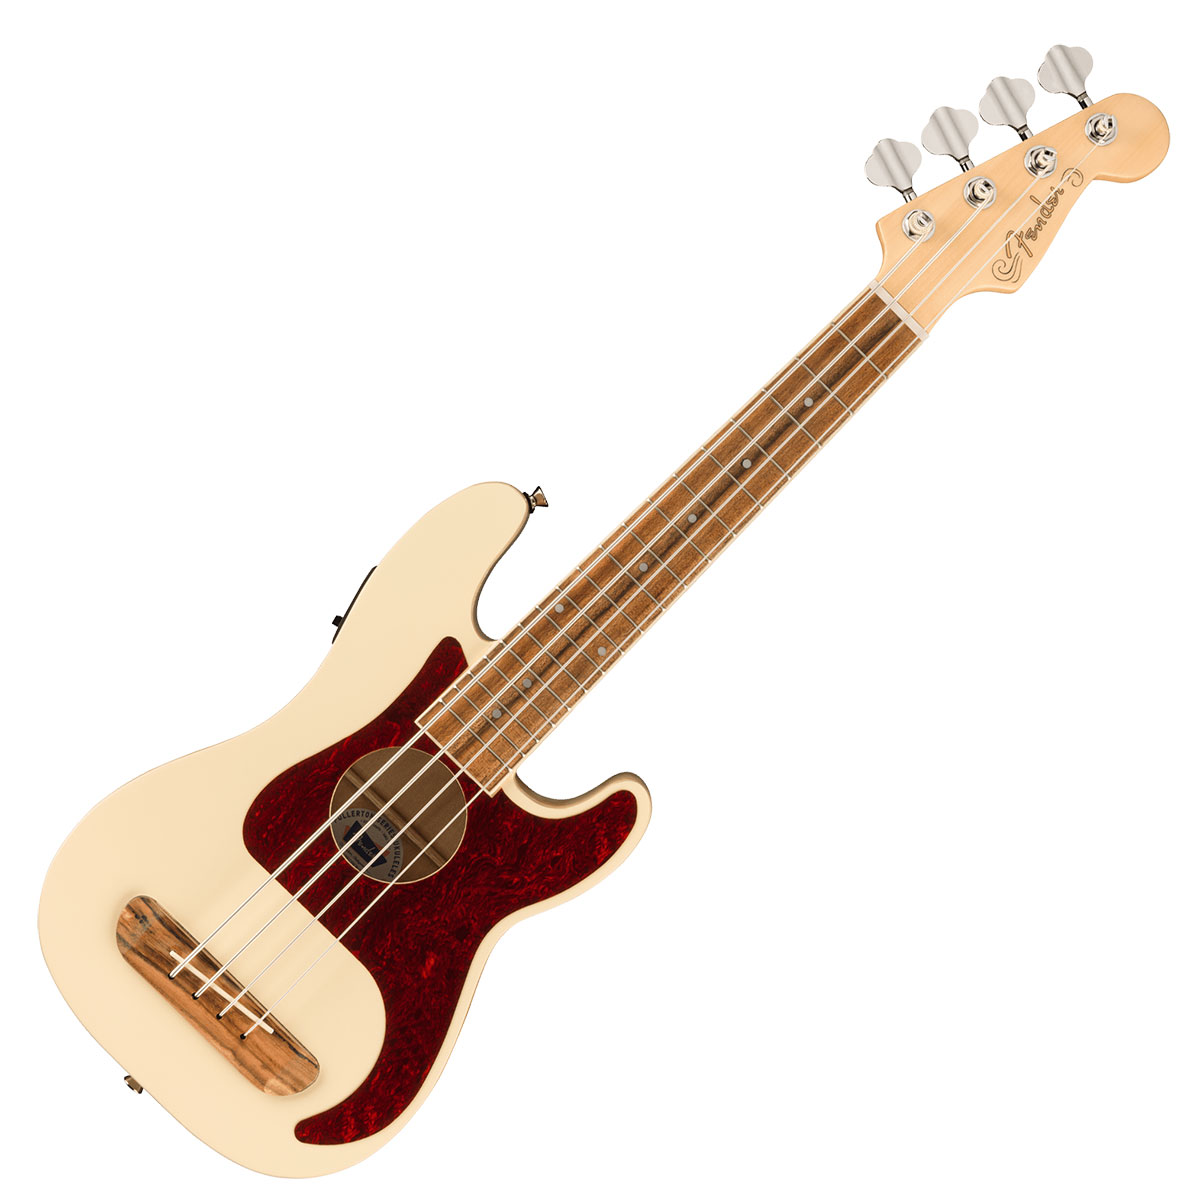 Fender Acoustics Fullerton Precision Bass Uke (Olympic White/Walnut Fingerboard)